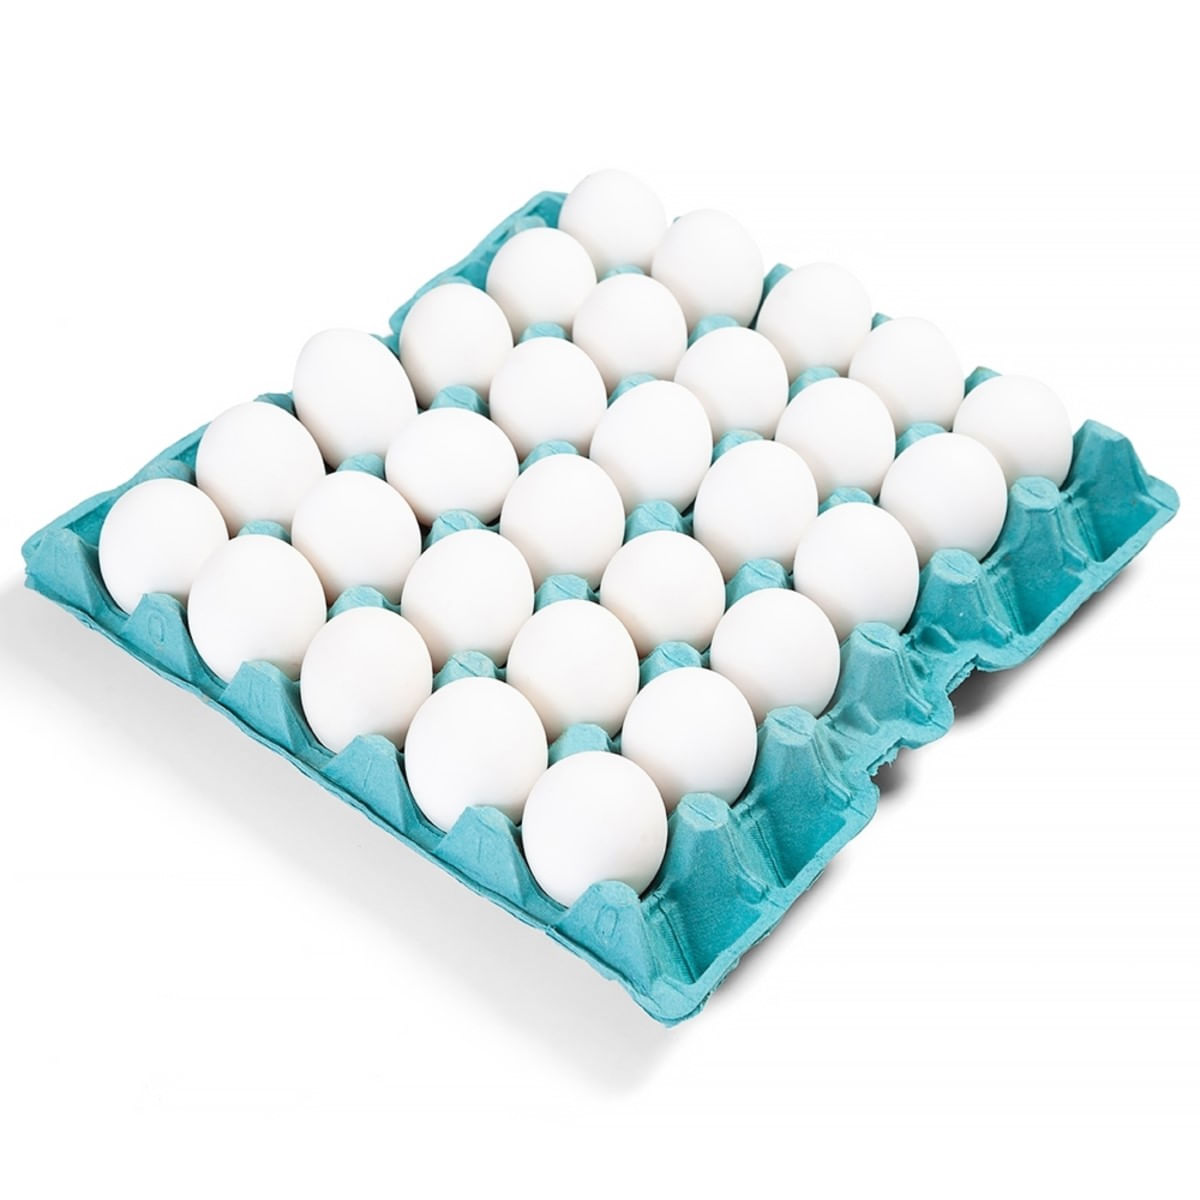 ovos-brancos-medio-iana-com-30-unidades-1.jpg